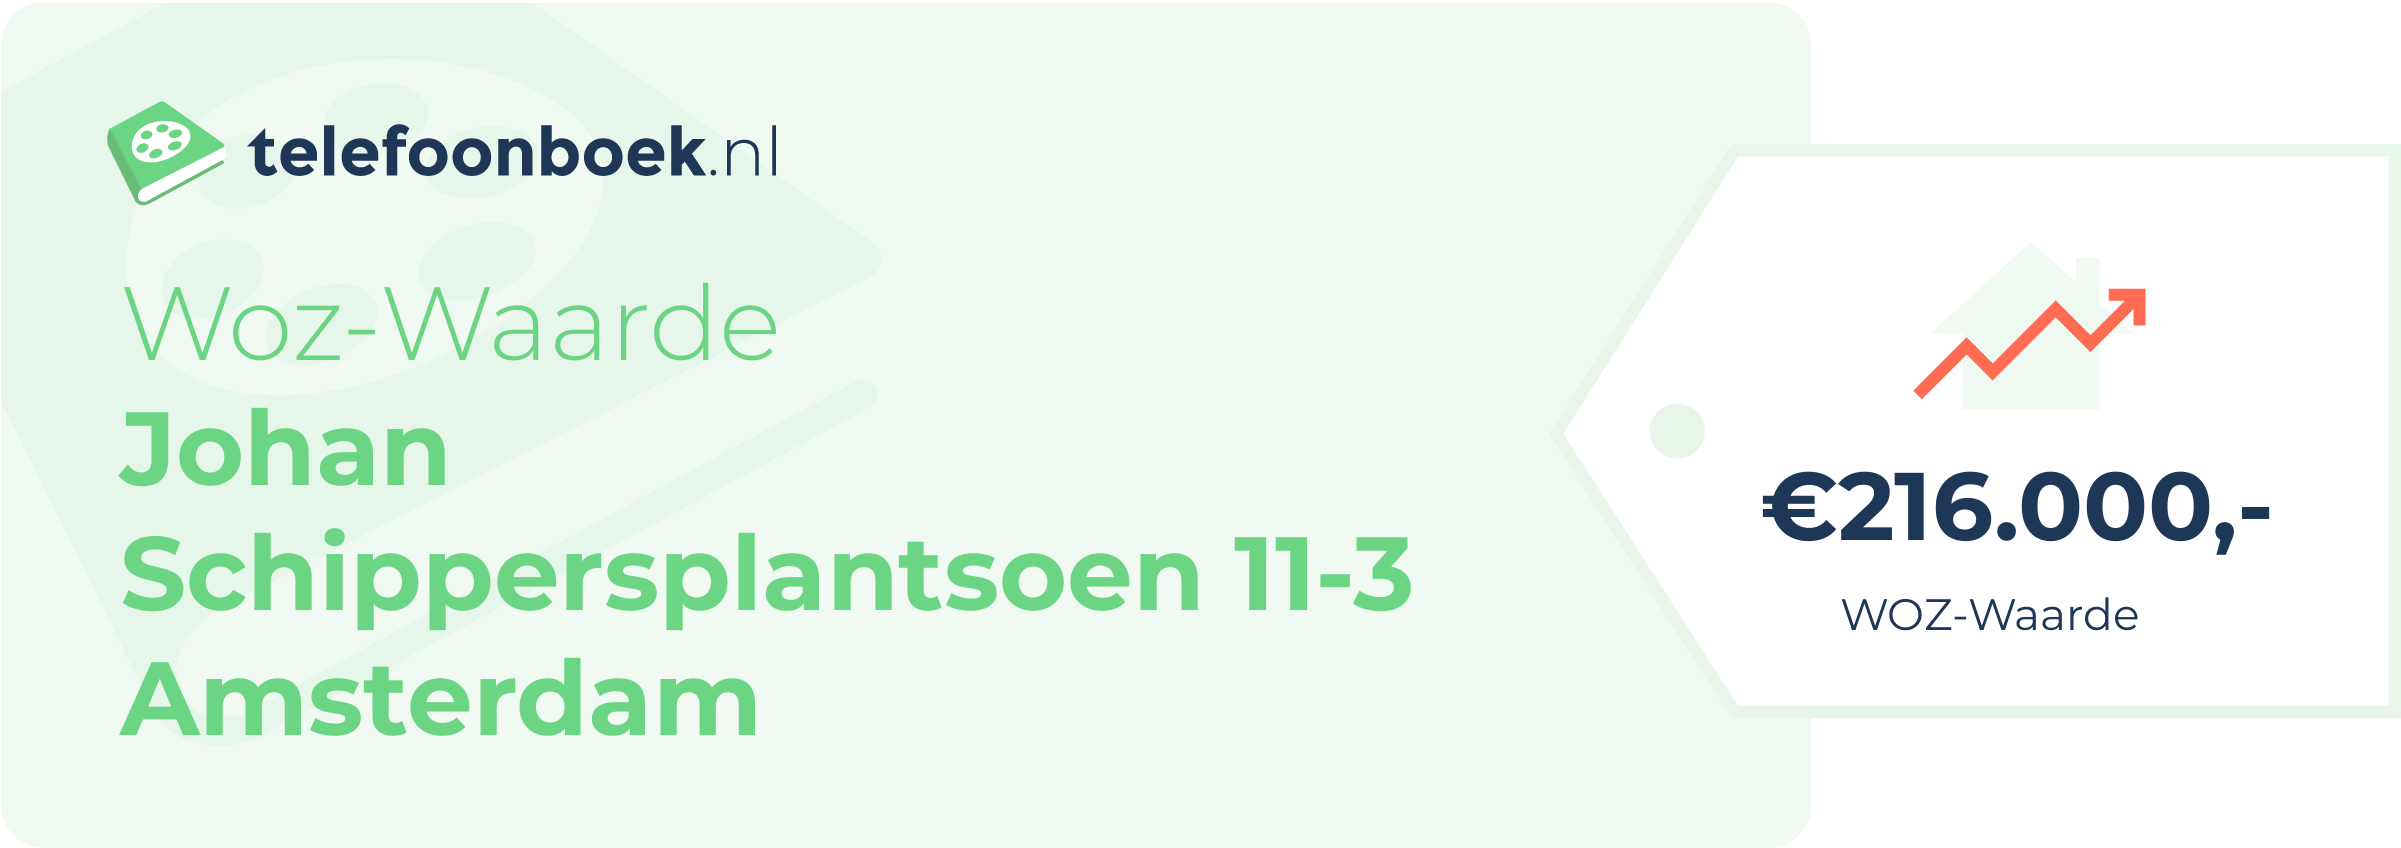 WOZ-waarde Johan Schippersplantsoen 11-3 Amsterdam